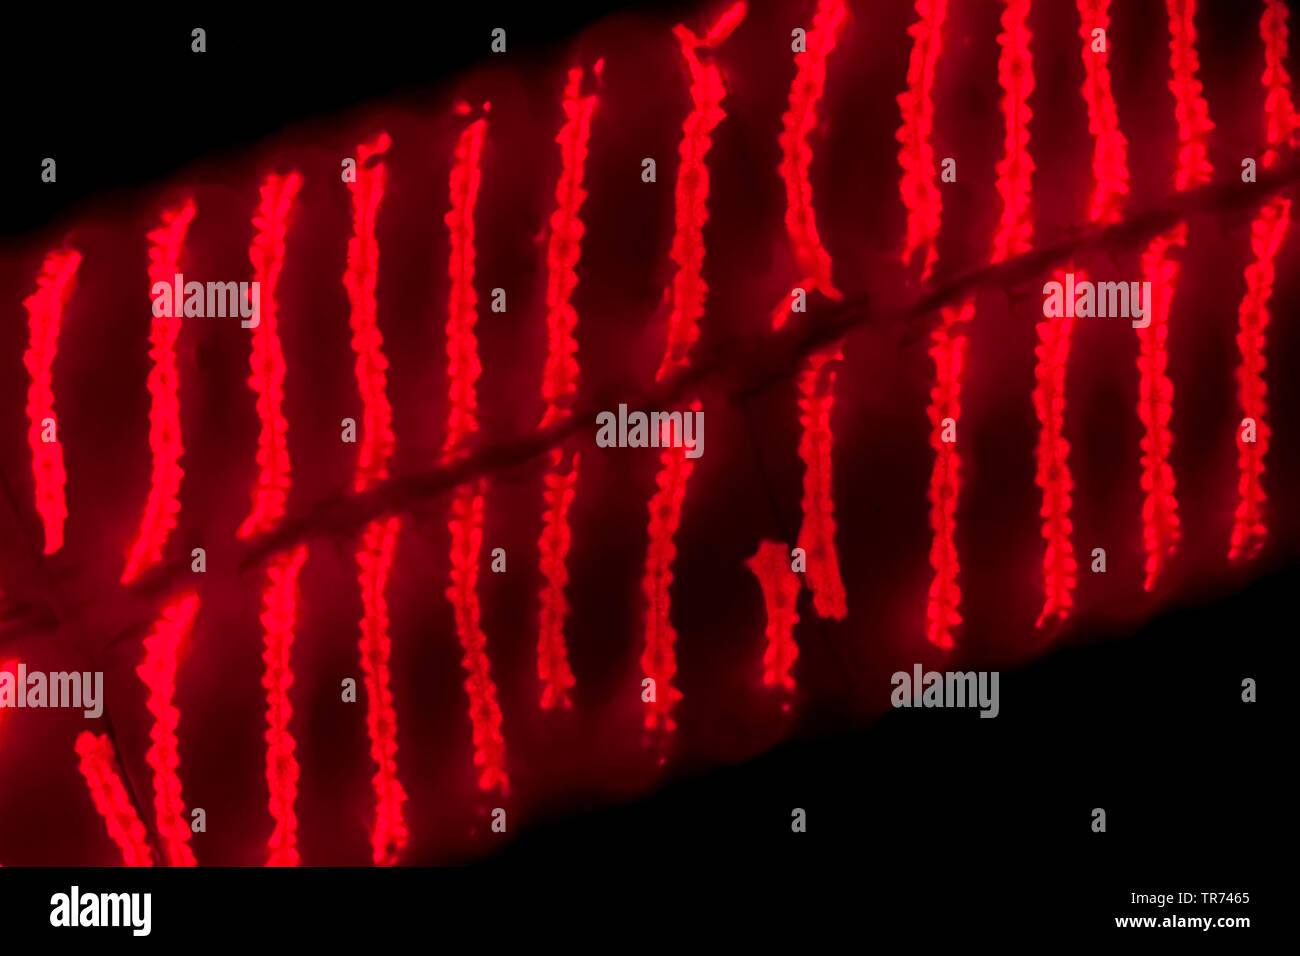 La soie de l'eau, mermaid's tresses, une couverture contre les mauvaises herbes (Spirogyra spec.), Image fluorescente de l'eau avec des soies, des chloroplastes en spirales x 140, Allemagne Banque D'Images